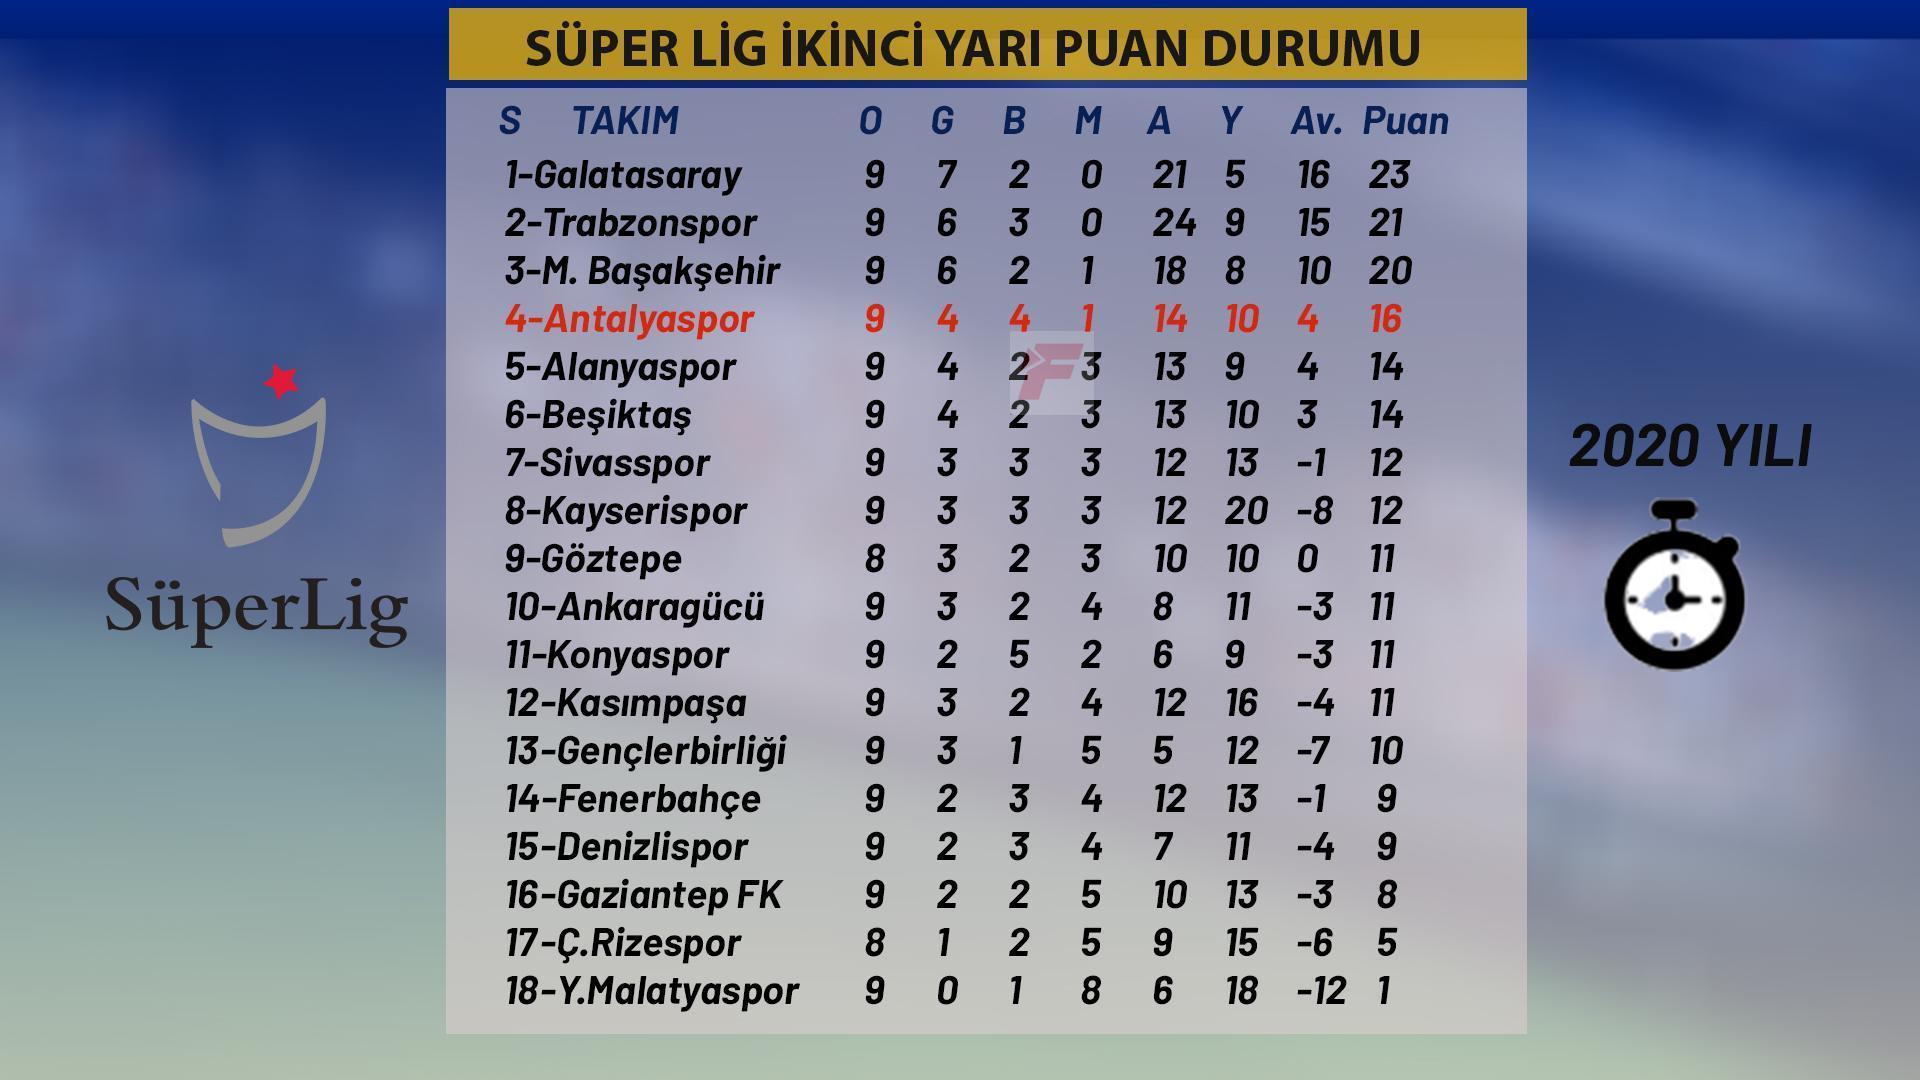 2020 yılı puan durumunda Antalyaspor 4. sırada